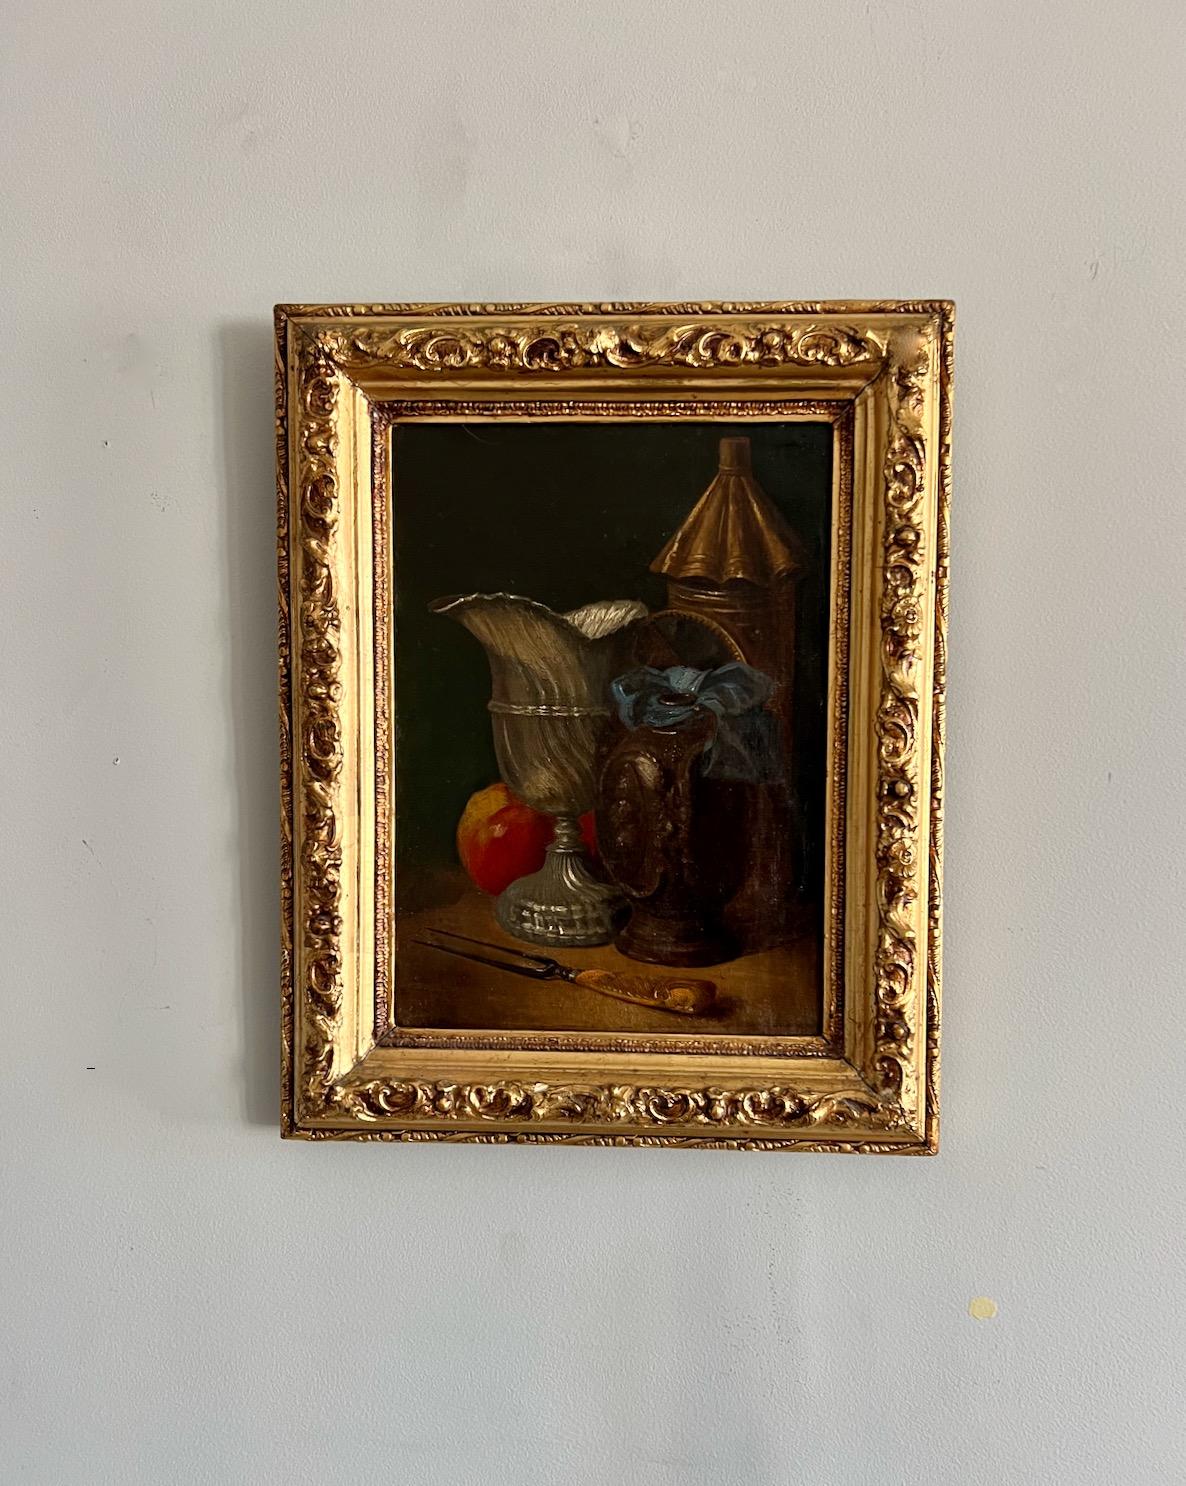 Stillleben des 19. Jahrhunderts, Eine Laterne, ein Tankard, eine Weinkanne, ein Apfel und eine Gabel – Painting von Unknown